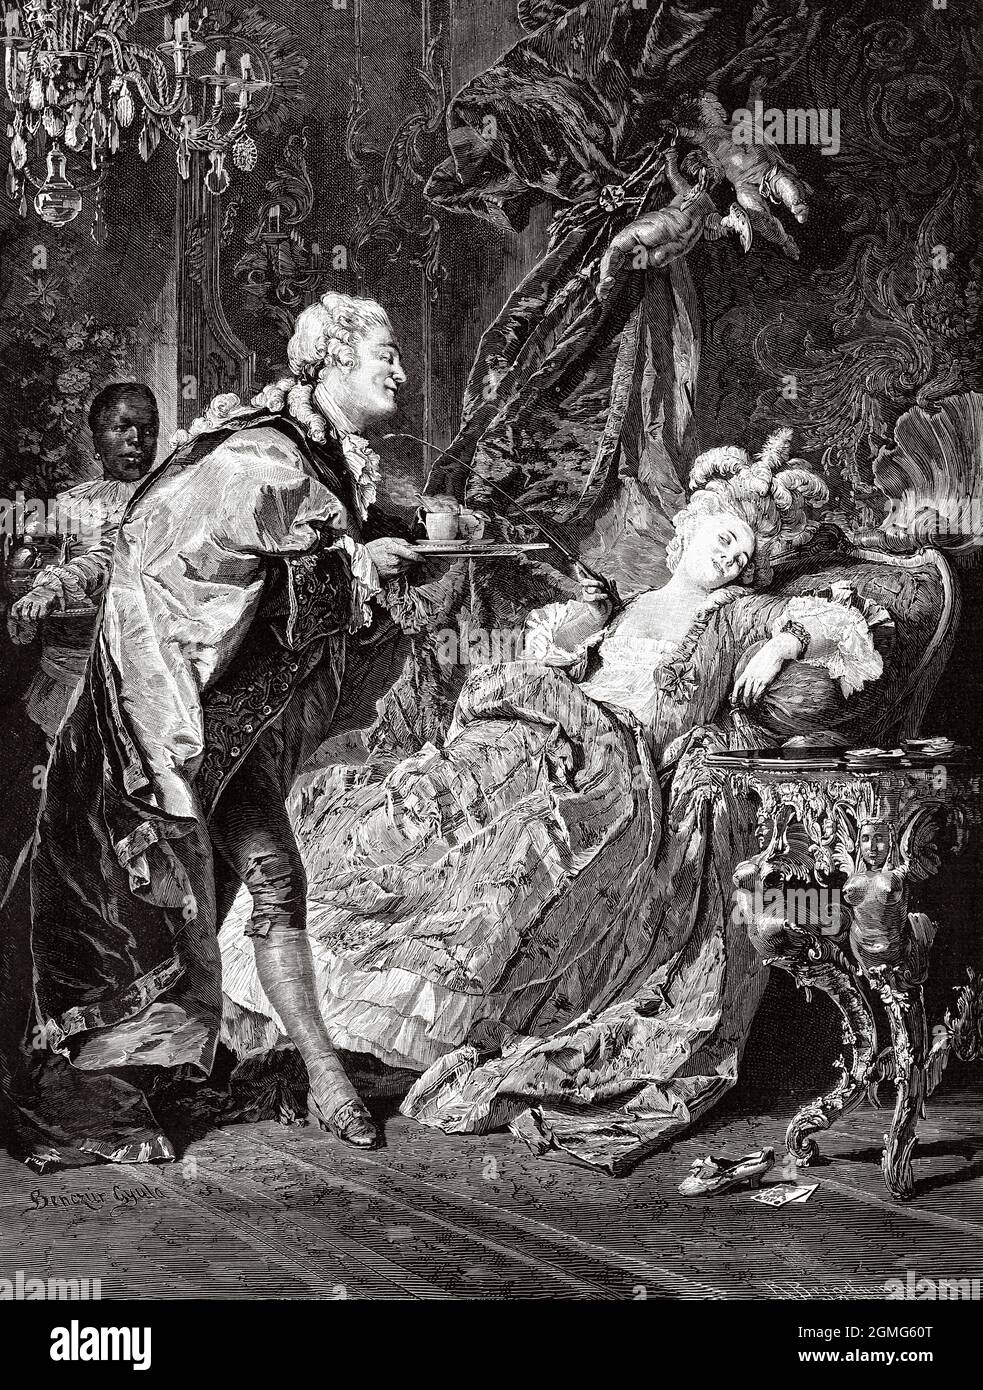 El rey Luis XV en Madame du Barry Cabinet, pintado por Gyula Benczúr (1844-1920) fue un pintor y profesor de arte húngaro. Me he especializado en retratos y escenas históricas. Antigua ilustración del siglo 19th grabada de La Ilustración Artística 1882 Foto de stock